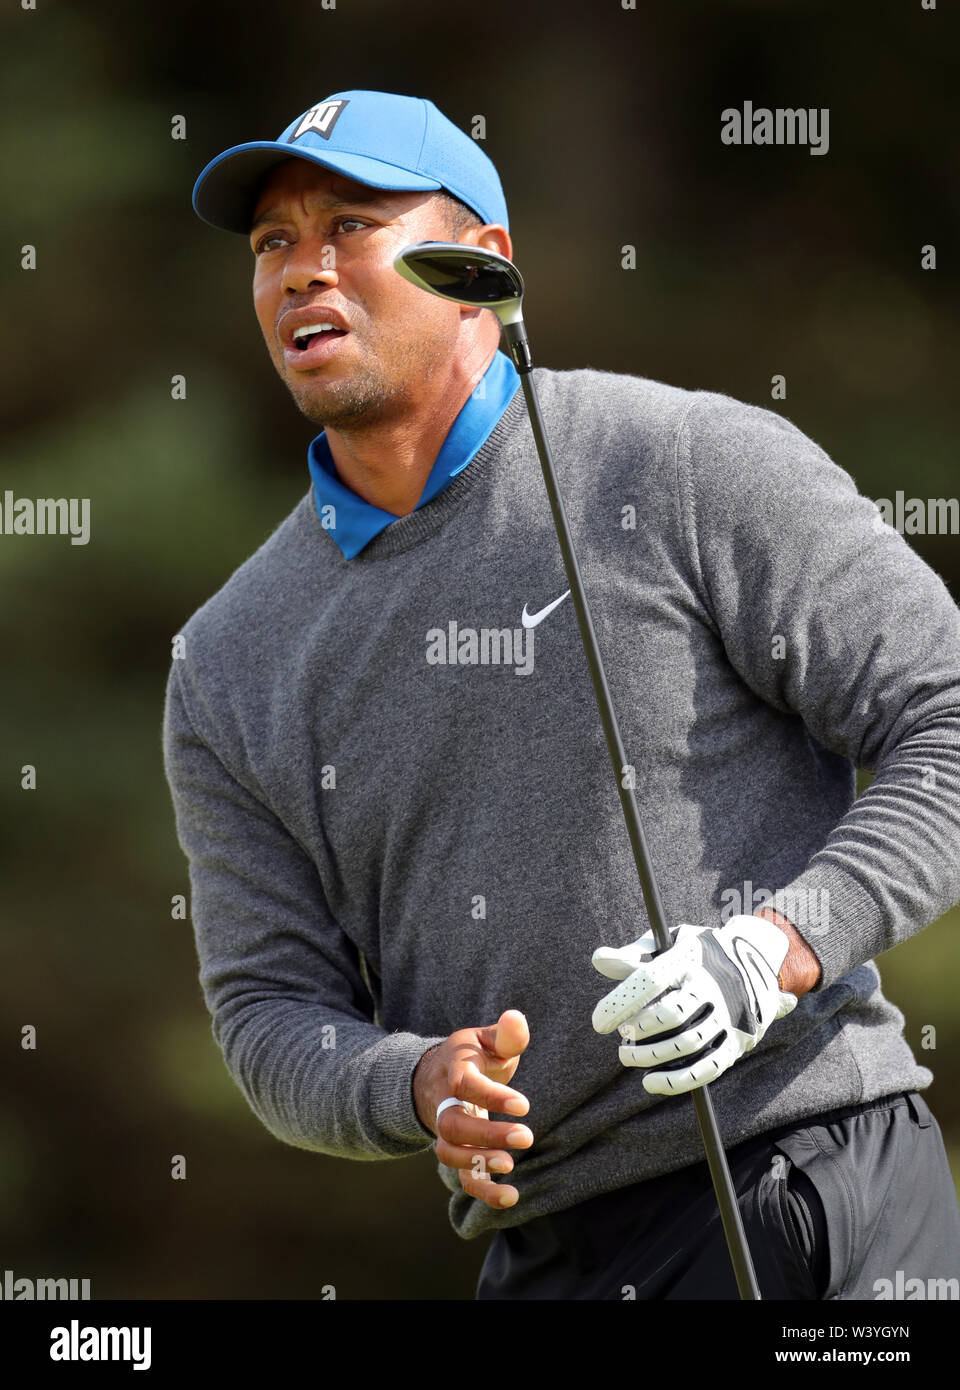 USA's Tiger Woods sur le 5ème tee au cours de la première journée du championnat ouvert en 2019 au Club de golf Royal Portrush. Banque D'Images